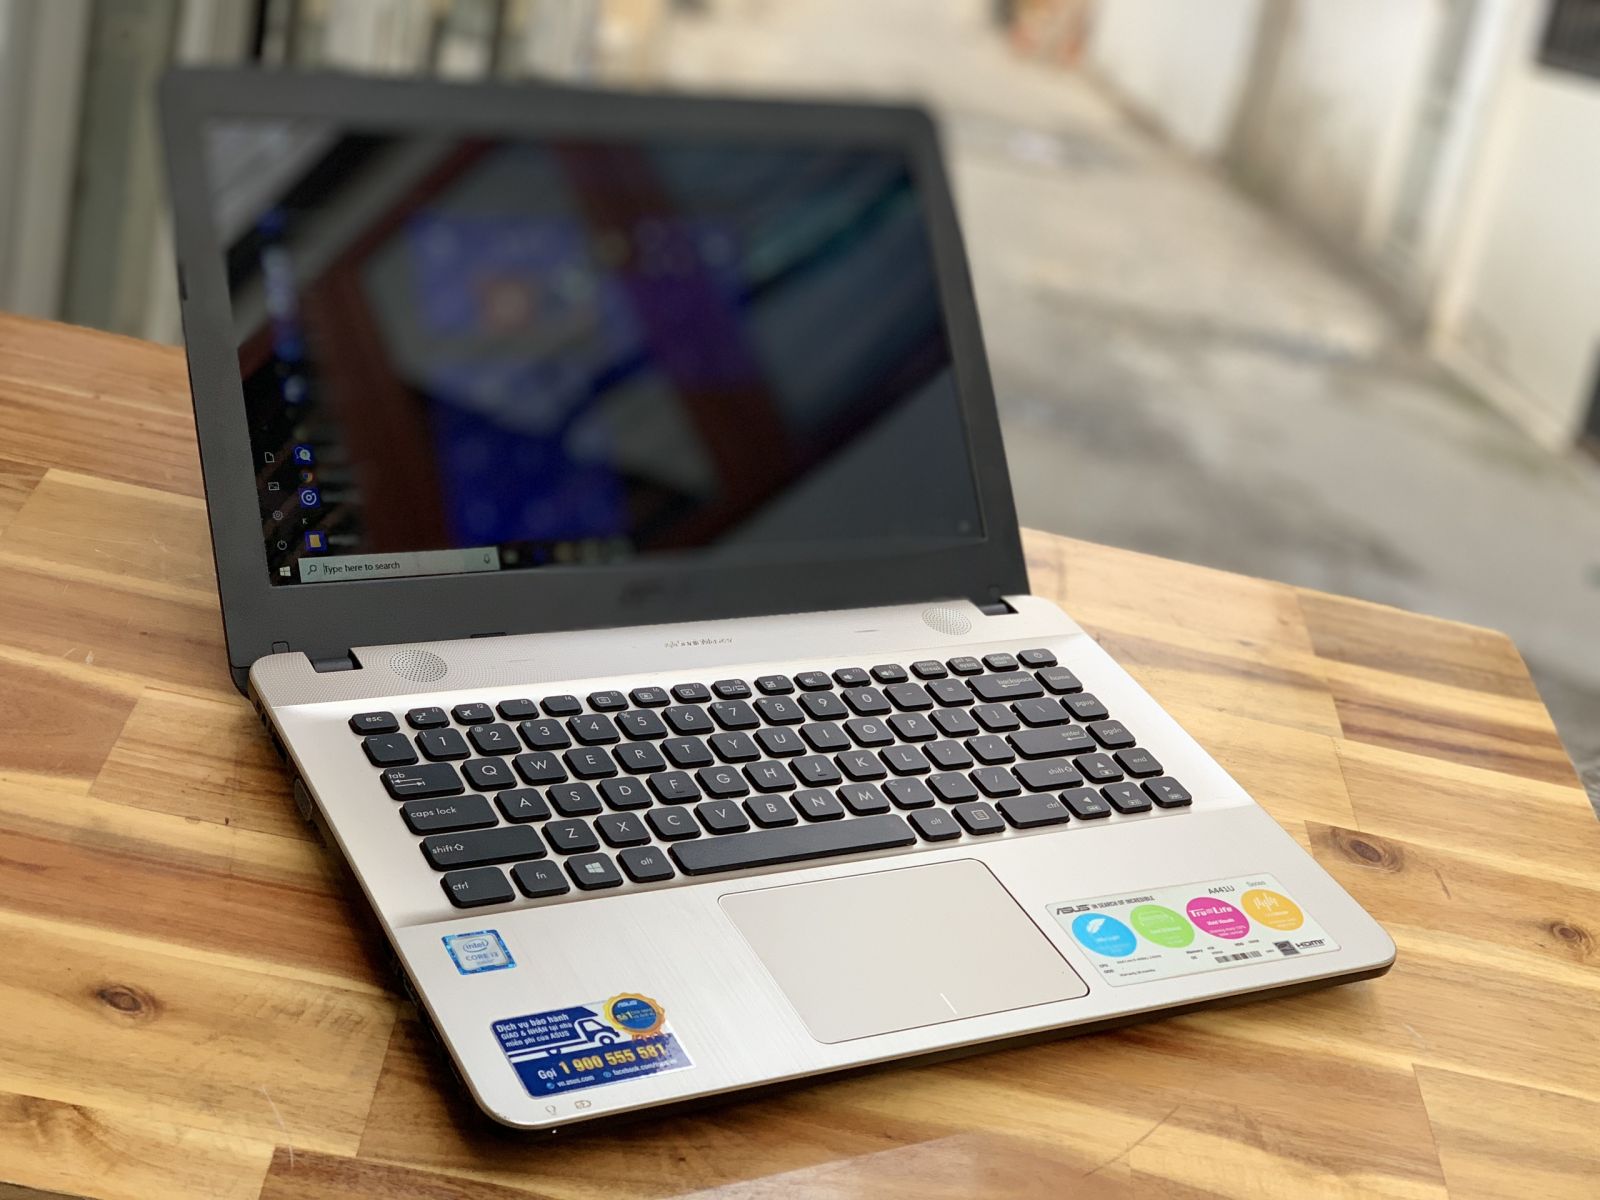 Laptop Asus Vivobook X441UB/ i5 7200U/ SSD/ 14in/ Vga rời Nvidida 2G/ Chuyên Game Đồ Họa/ Type C/ Giá rẻ2